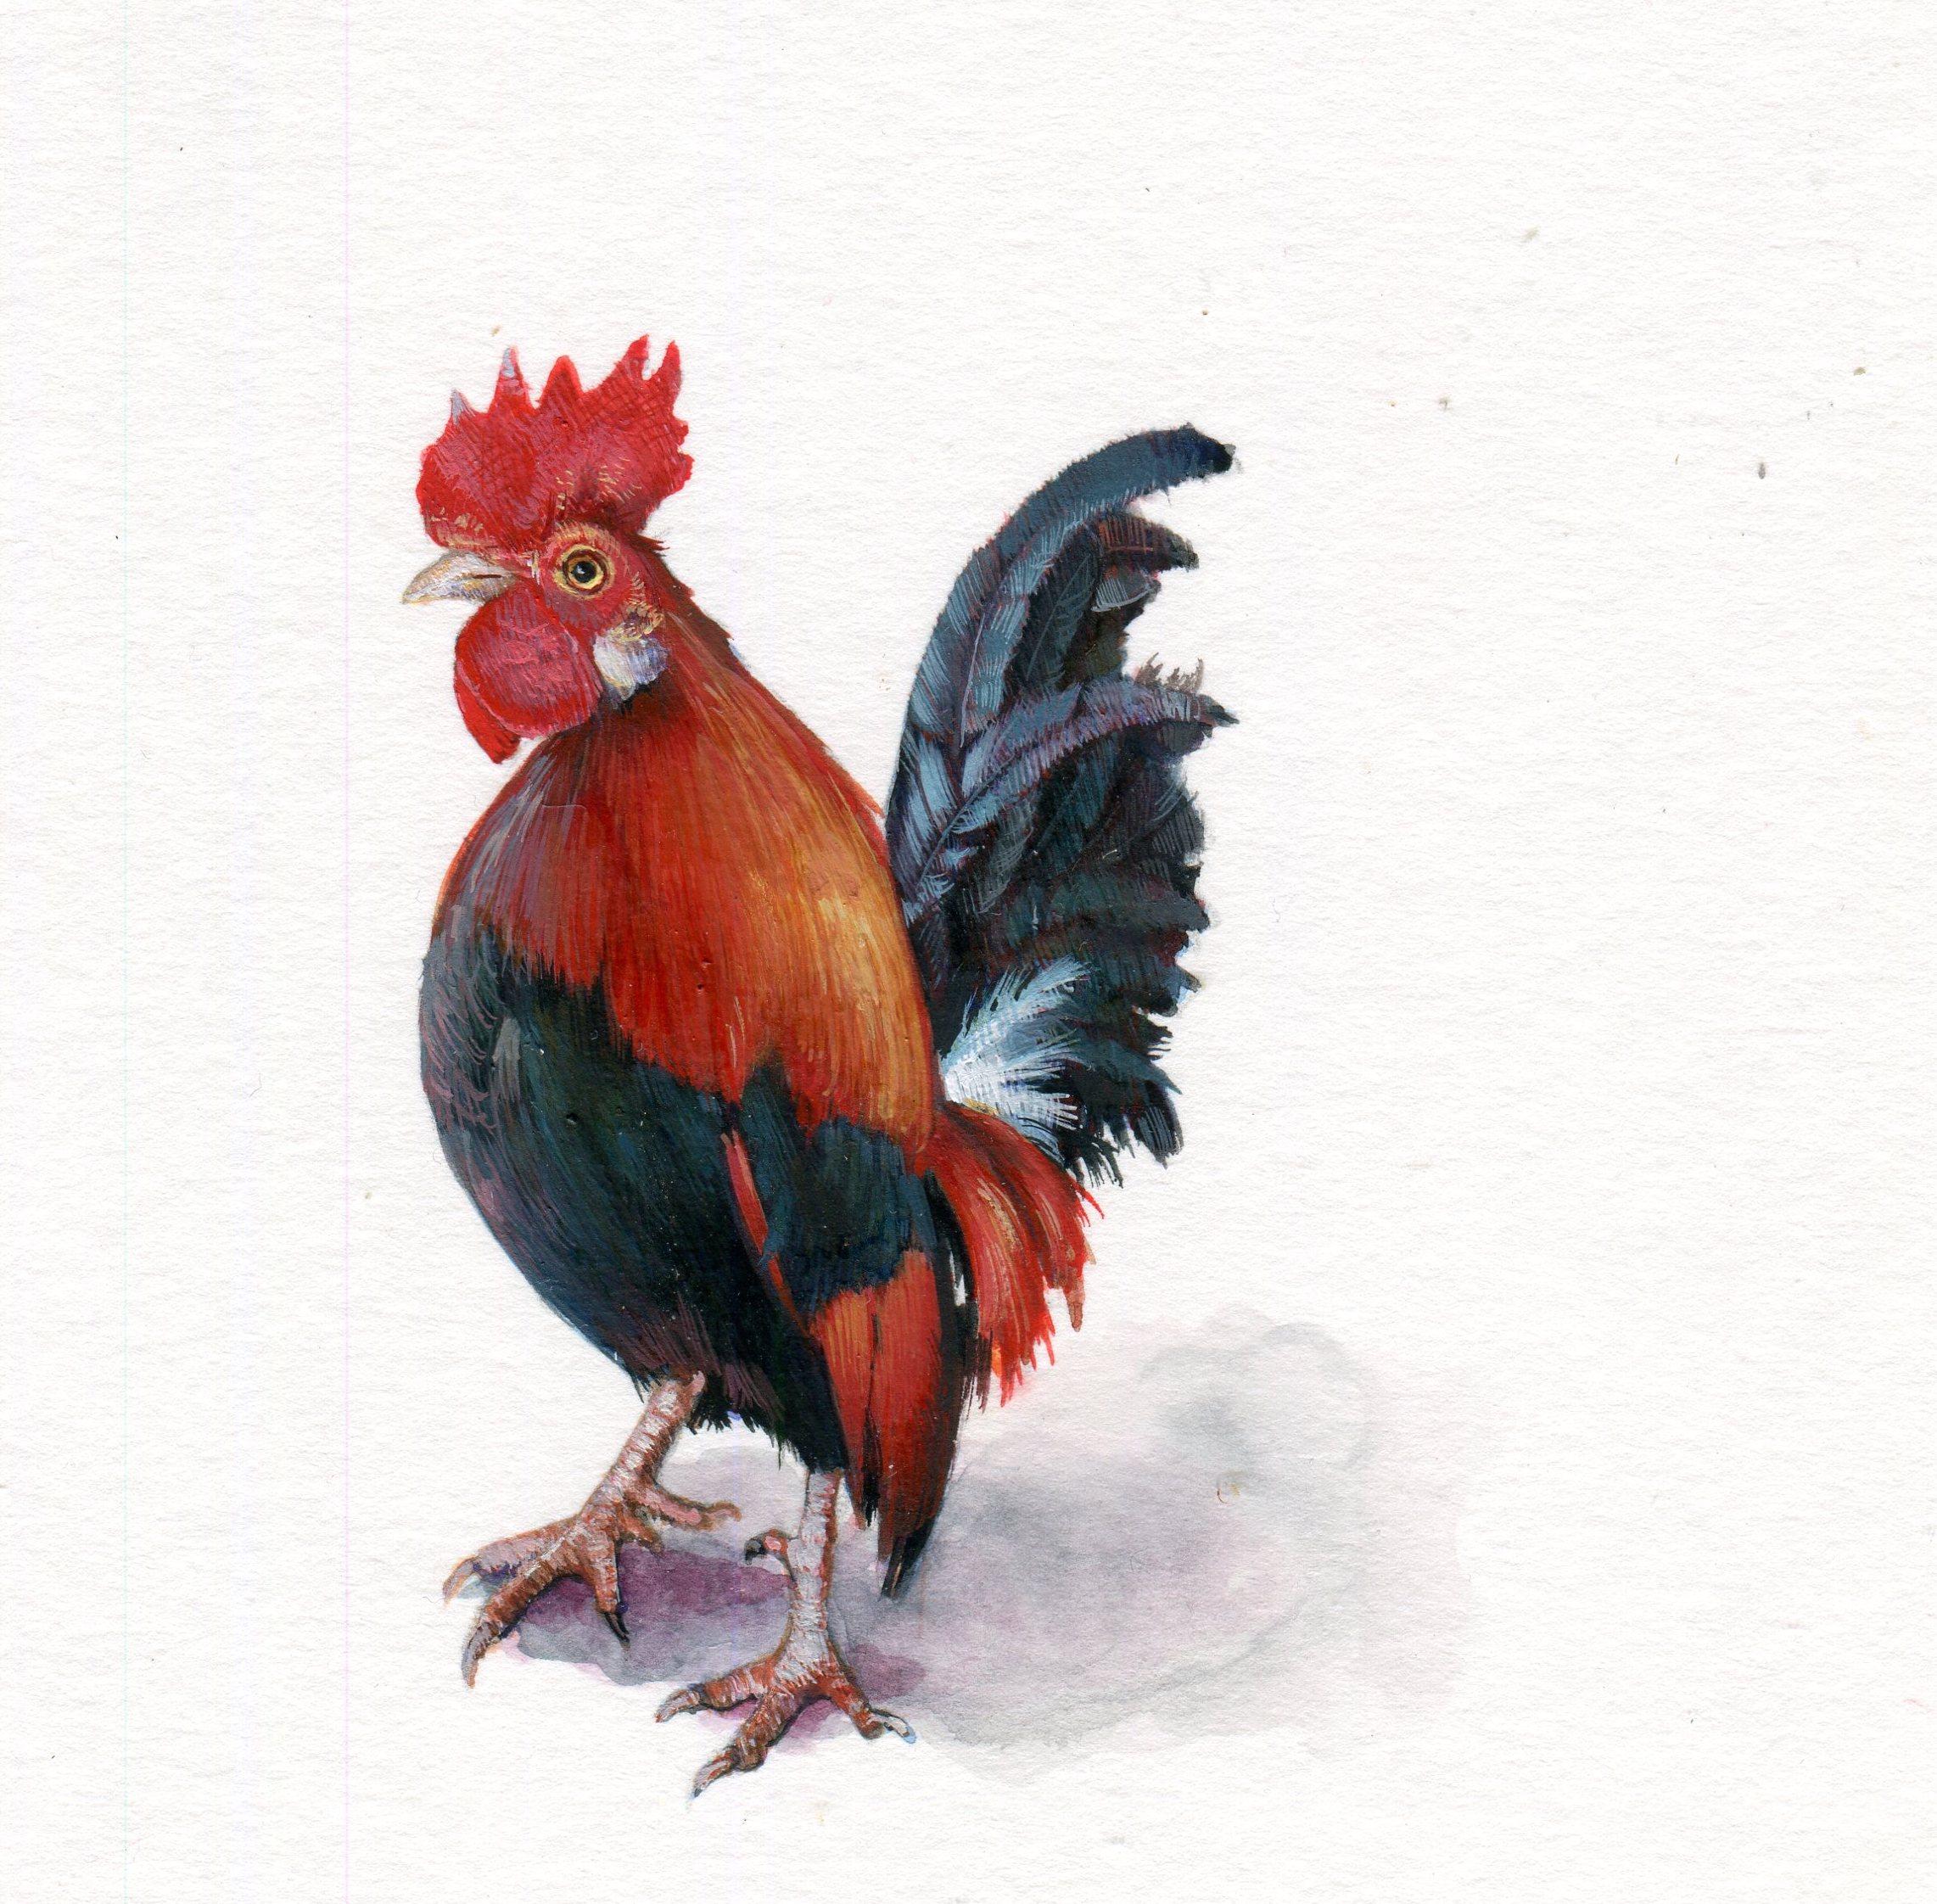 Rooster, zeitgenössische, realistische Tierminiatur aus Gouache auf Papier